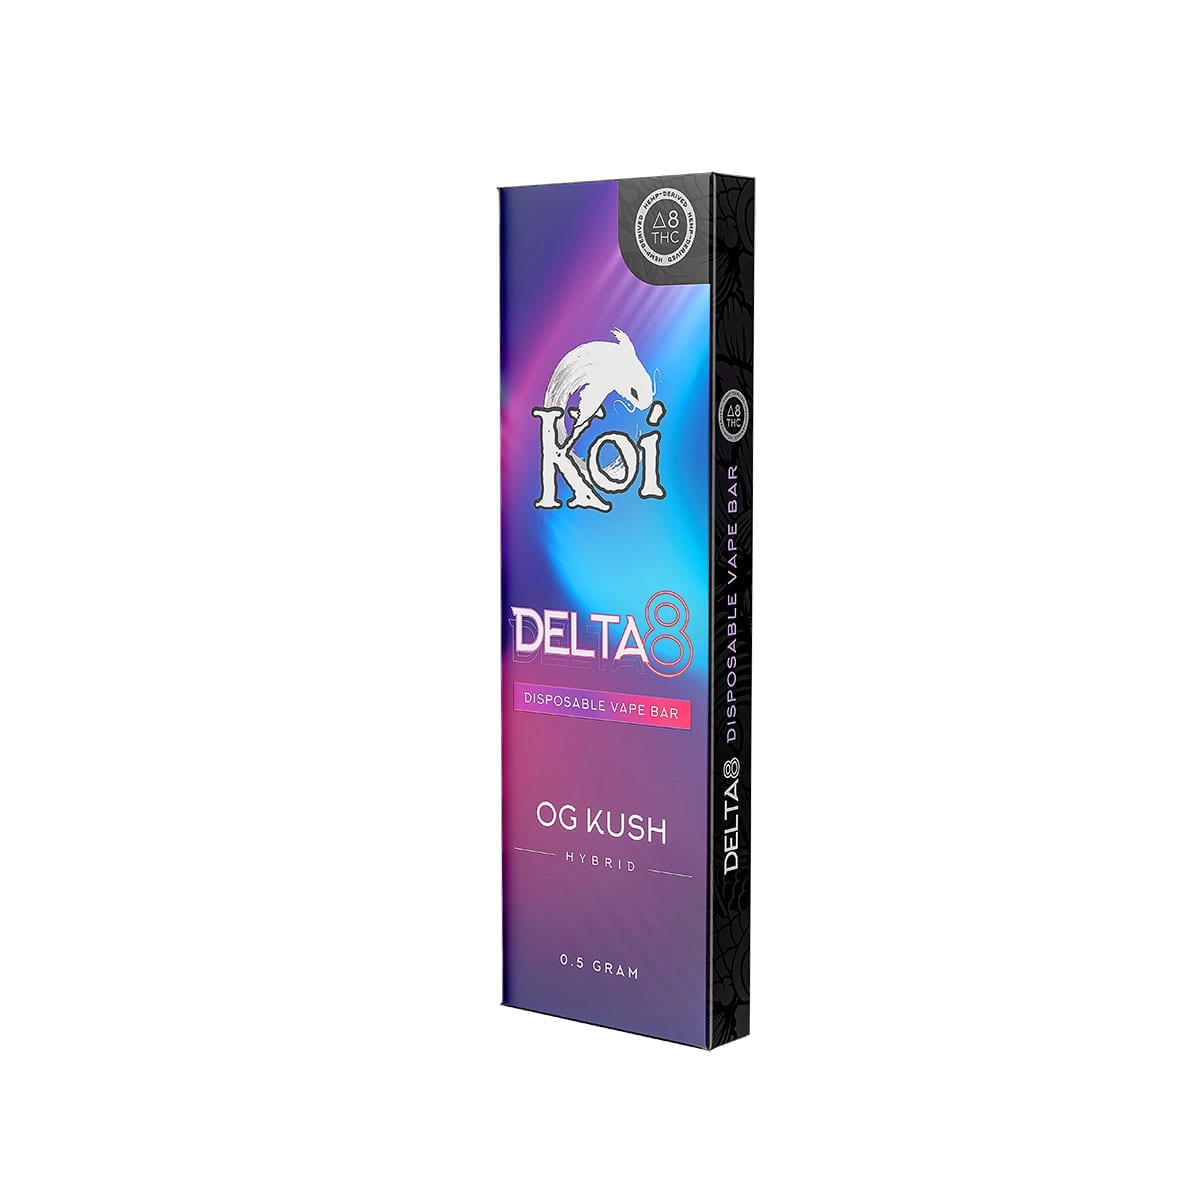 Koi Delta 8 THC Disposable Vape Bars - OG Kush 430mg ...